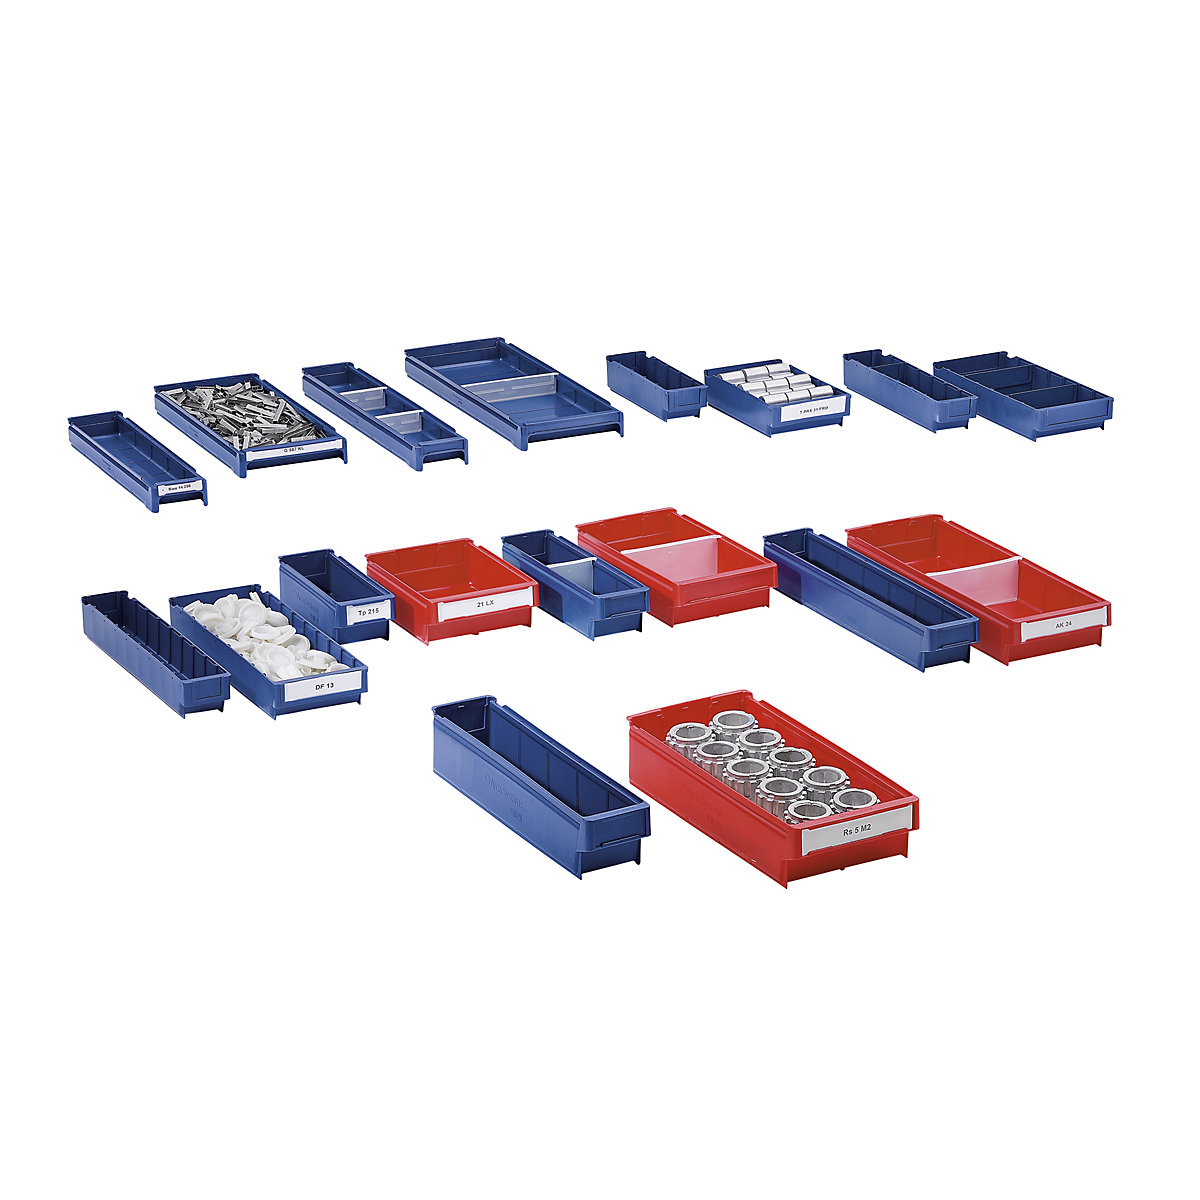 Regalkasten aus Polypropylen, blau, LxBxH 500 x 94 x 80 mm, VE 40 Stk-1